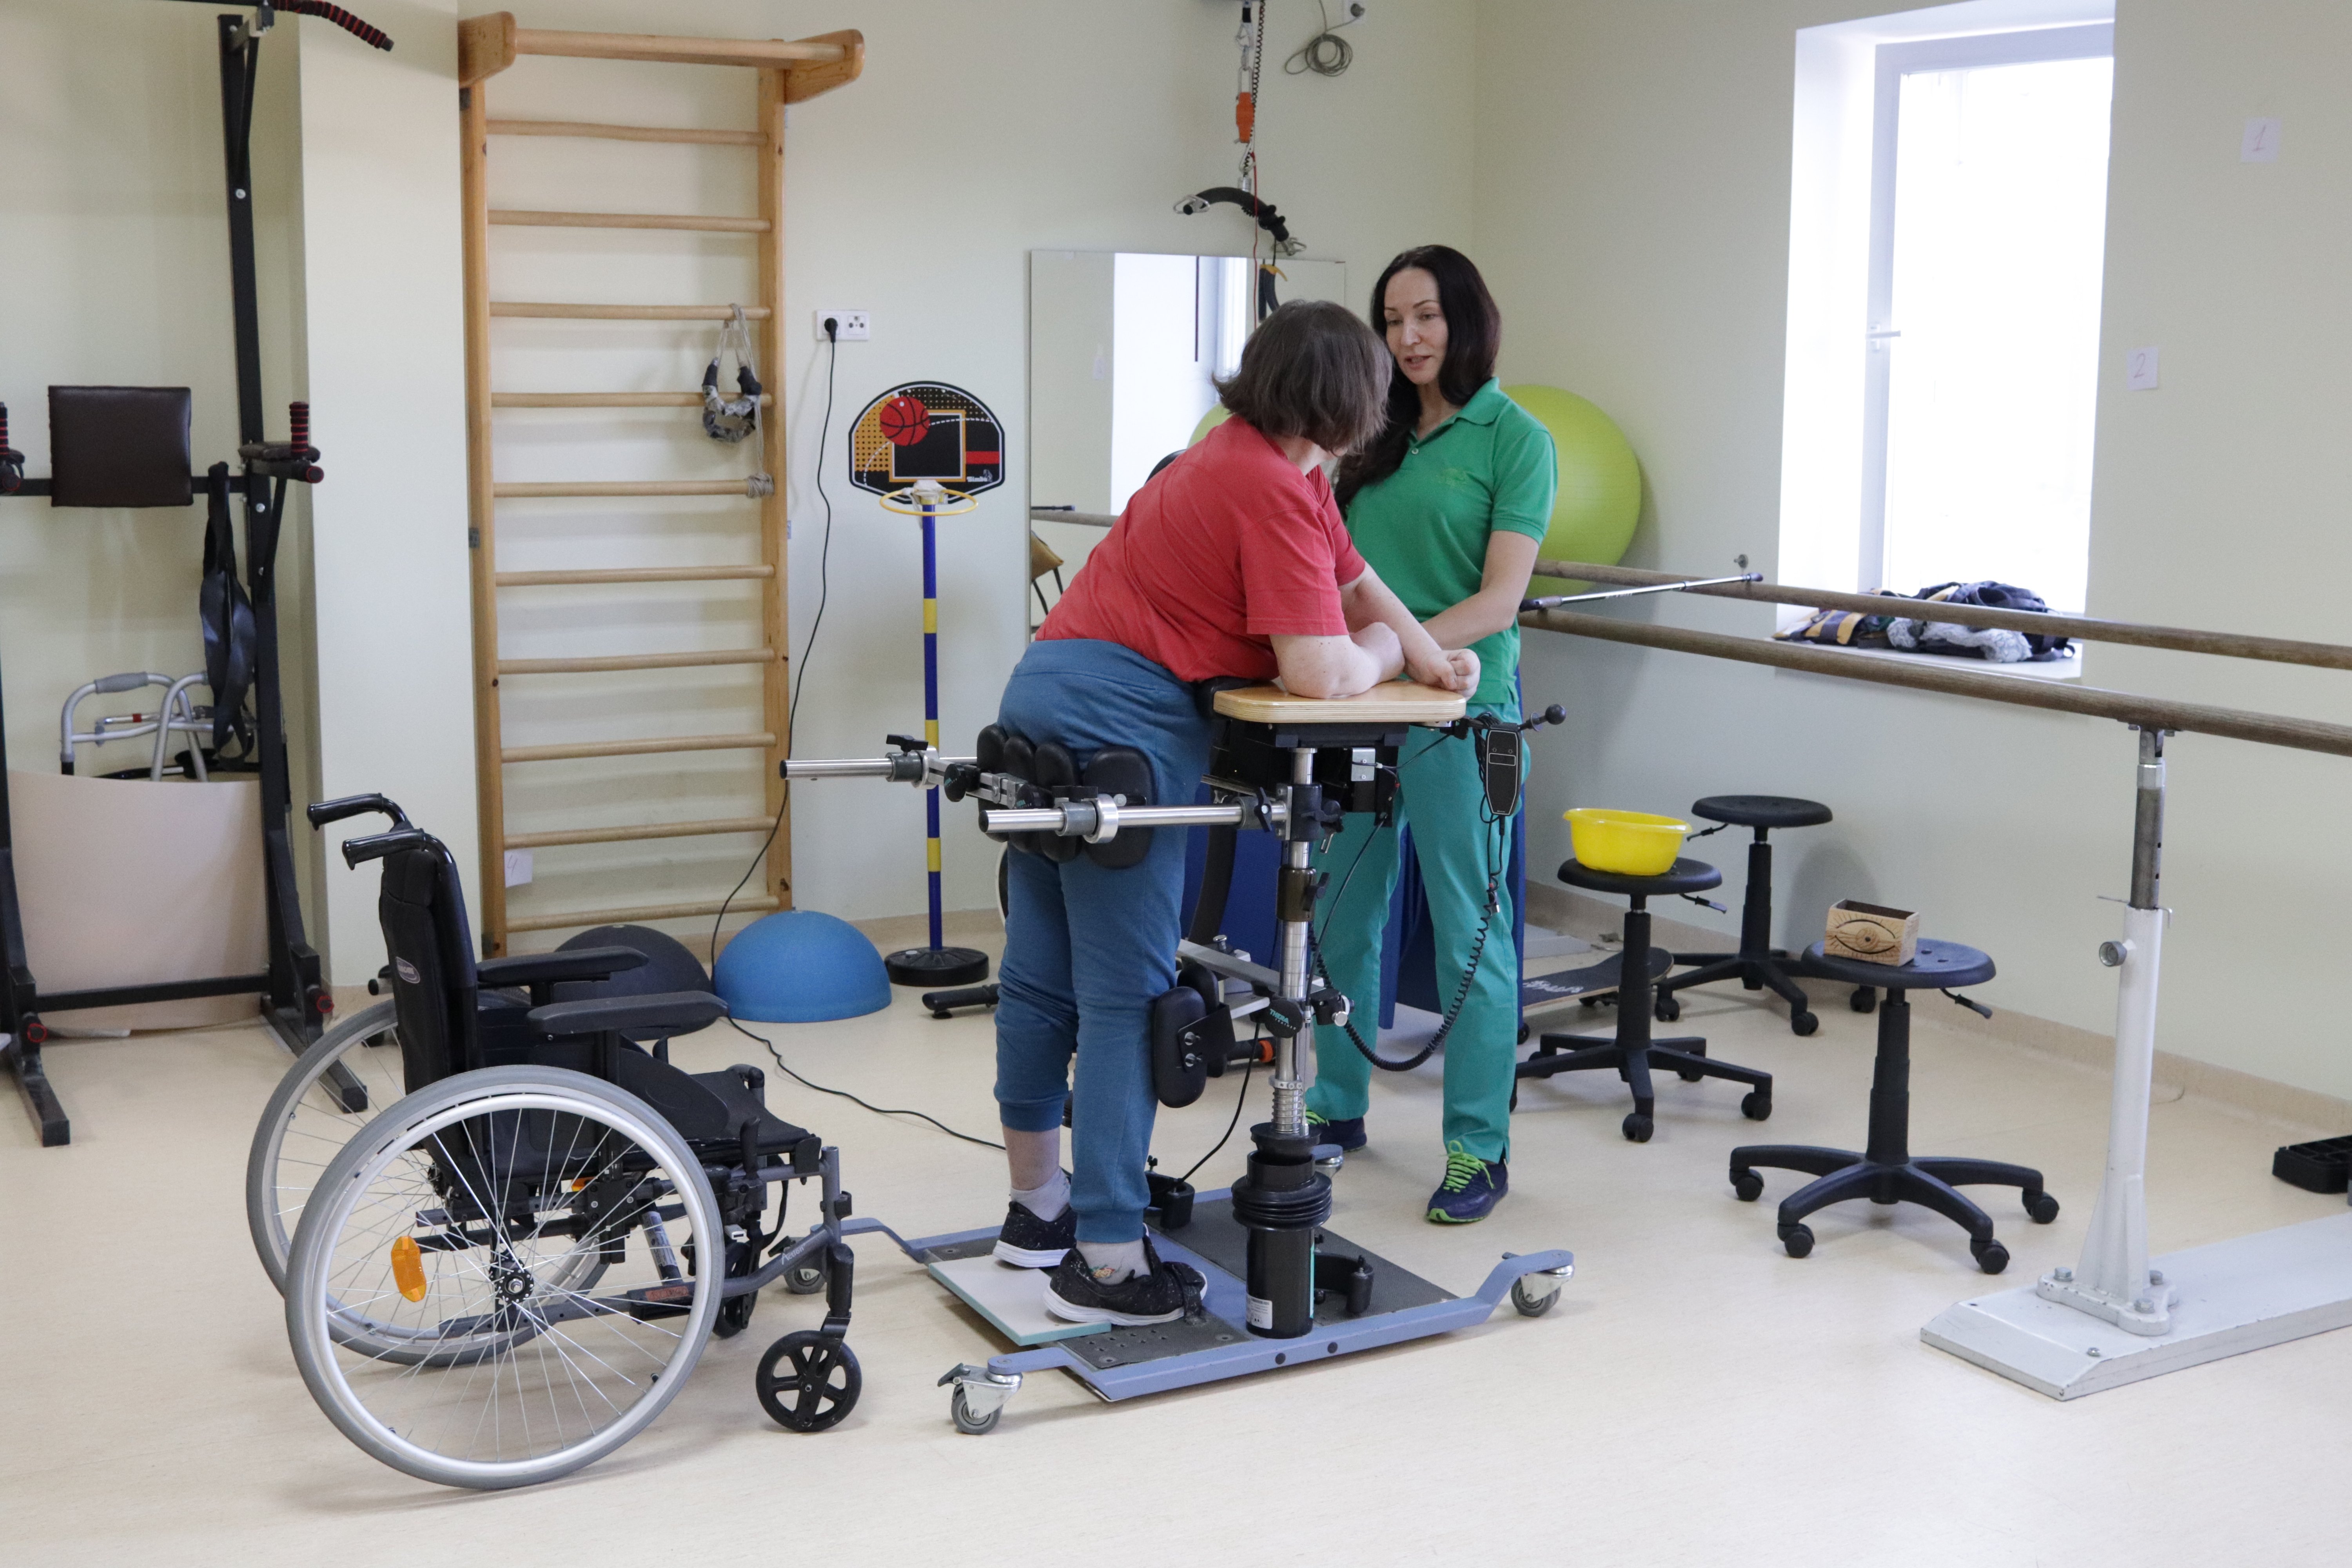 ФОКе заработал тренажерный зал для людей с ограниченными возможностями здоровья